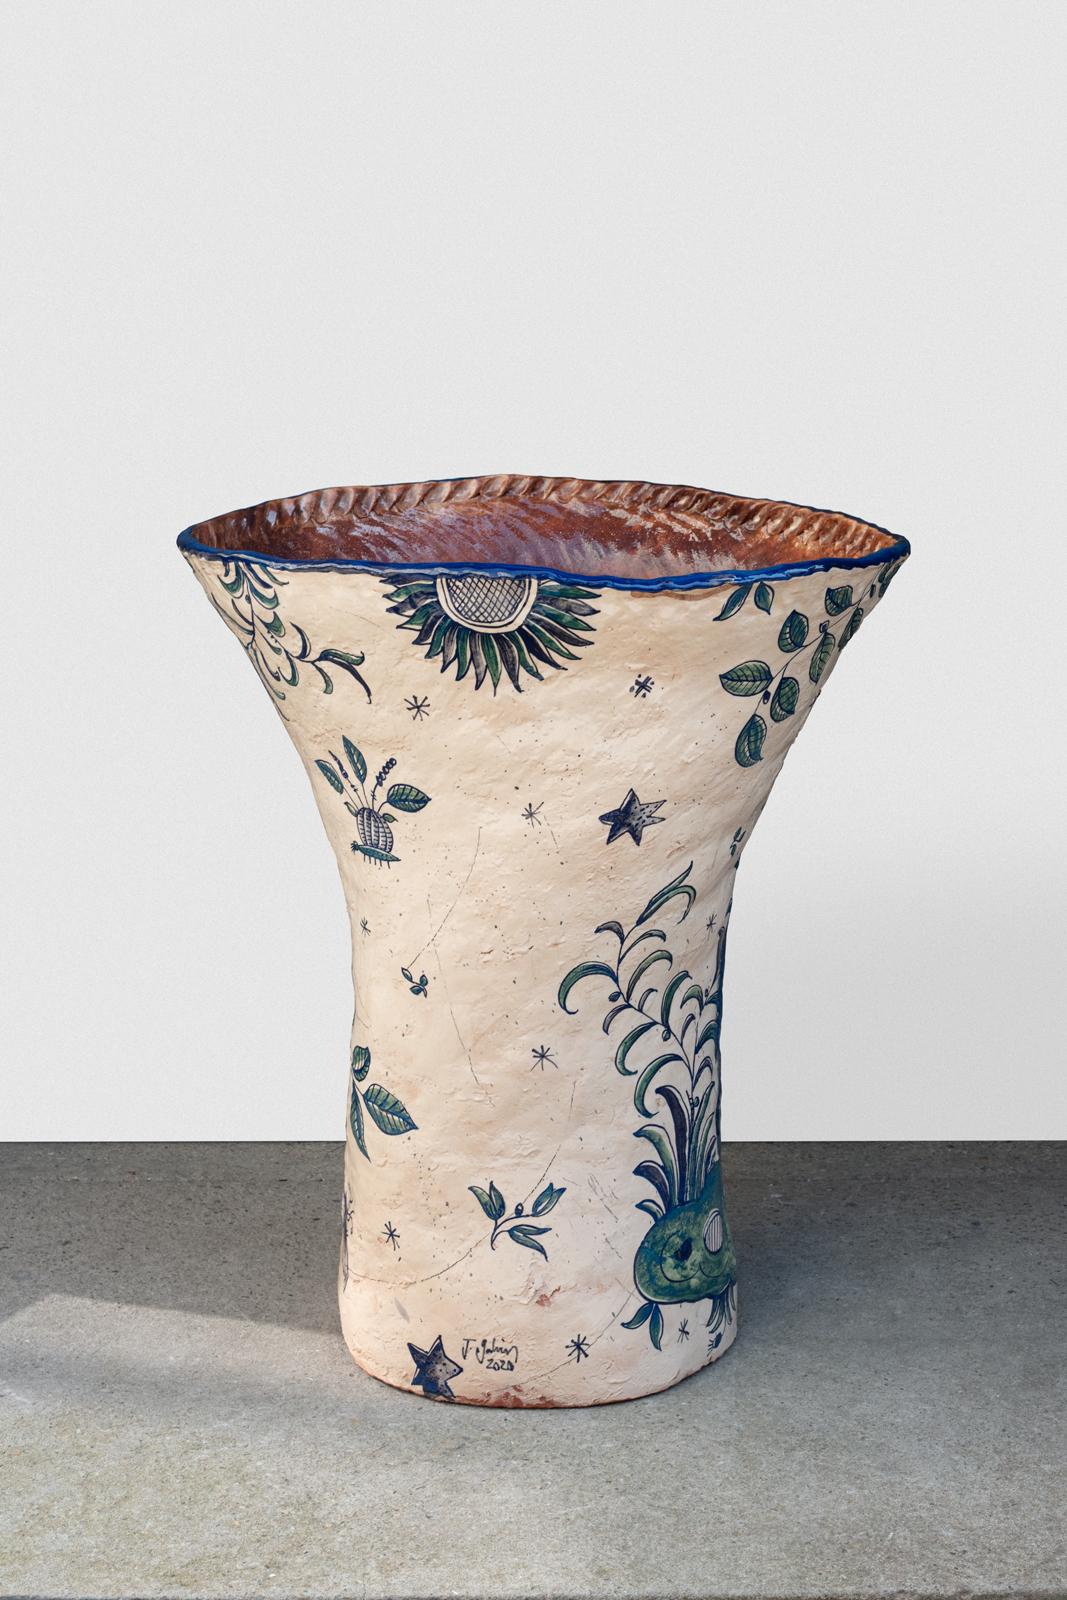 Vase monumental en céramique avec décor de glaçure.
Pièce unique.
Signé et daté 2020 à la base.
Conditions d'origine parfaites.